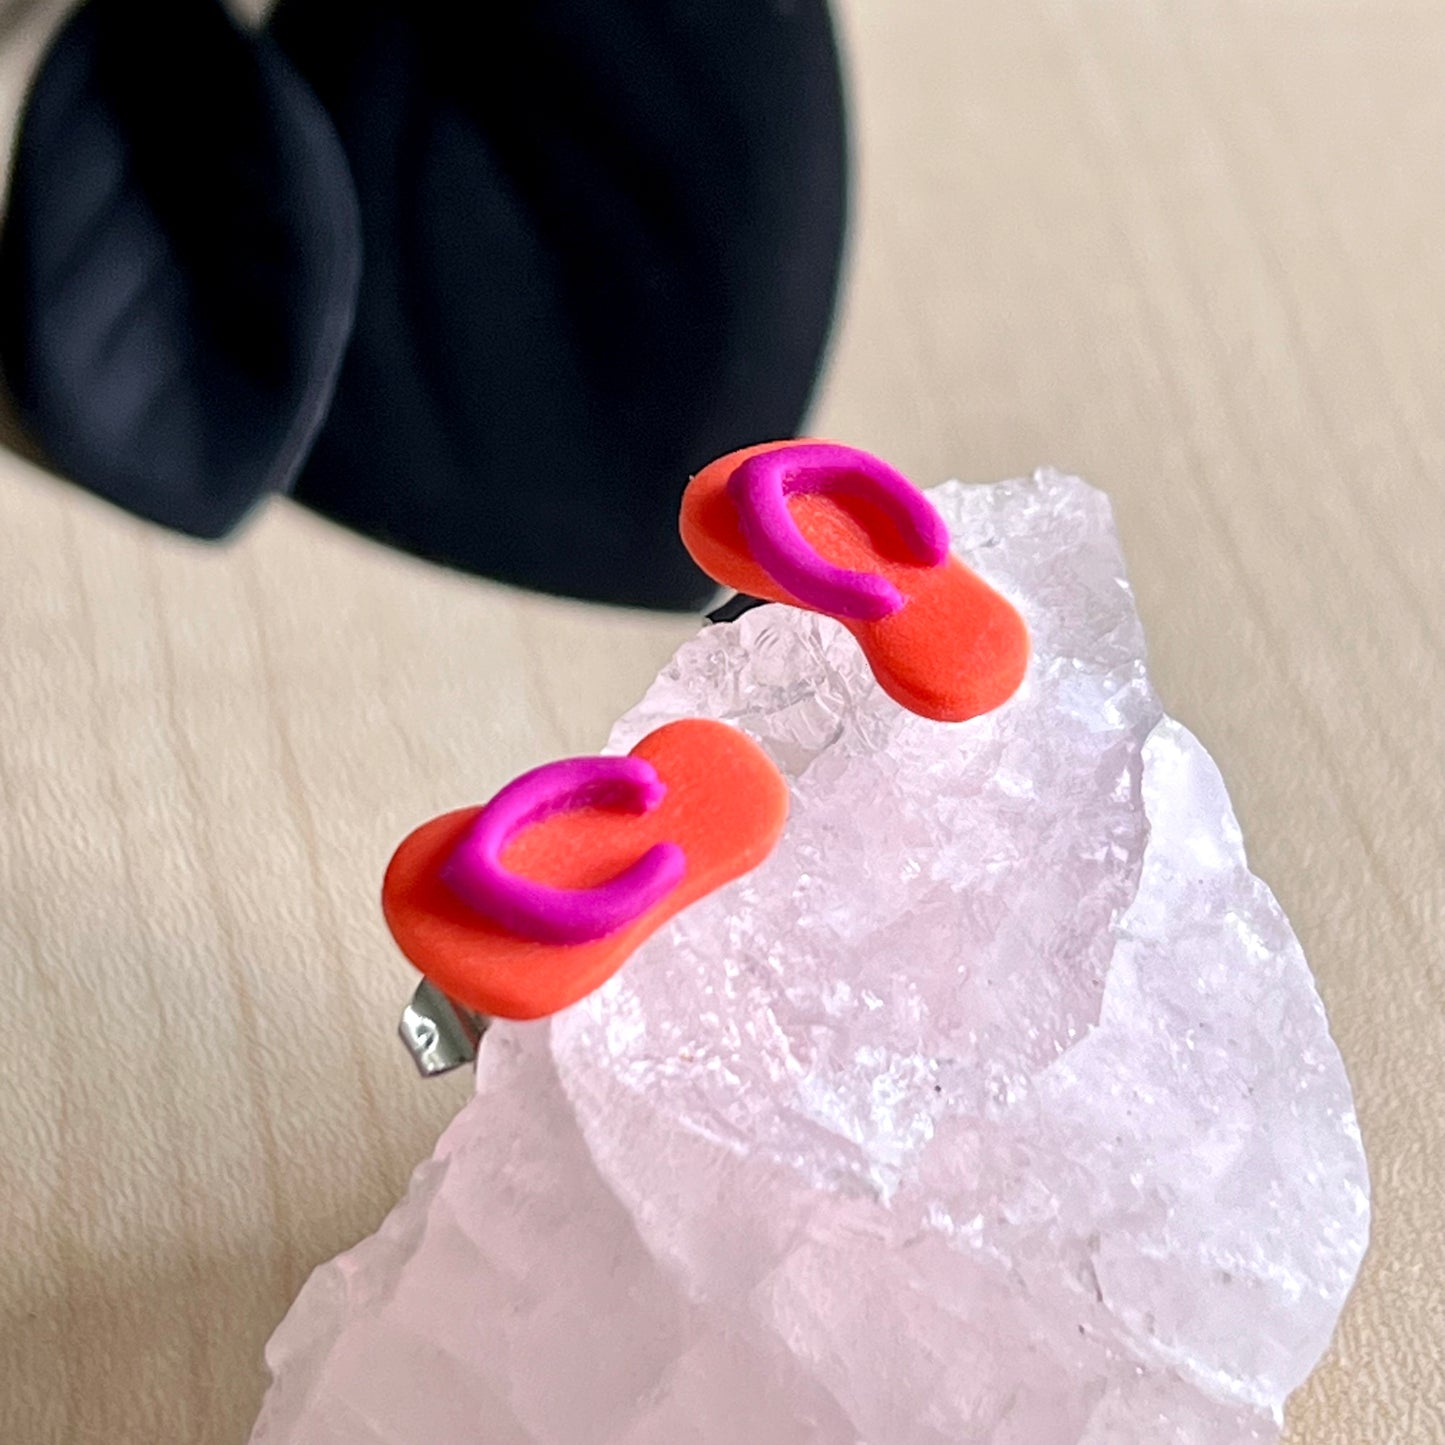 Thongs / flip flops studs, orange with dark pink, handmade earrings